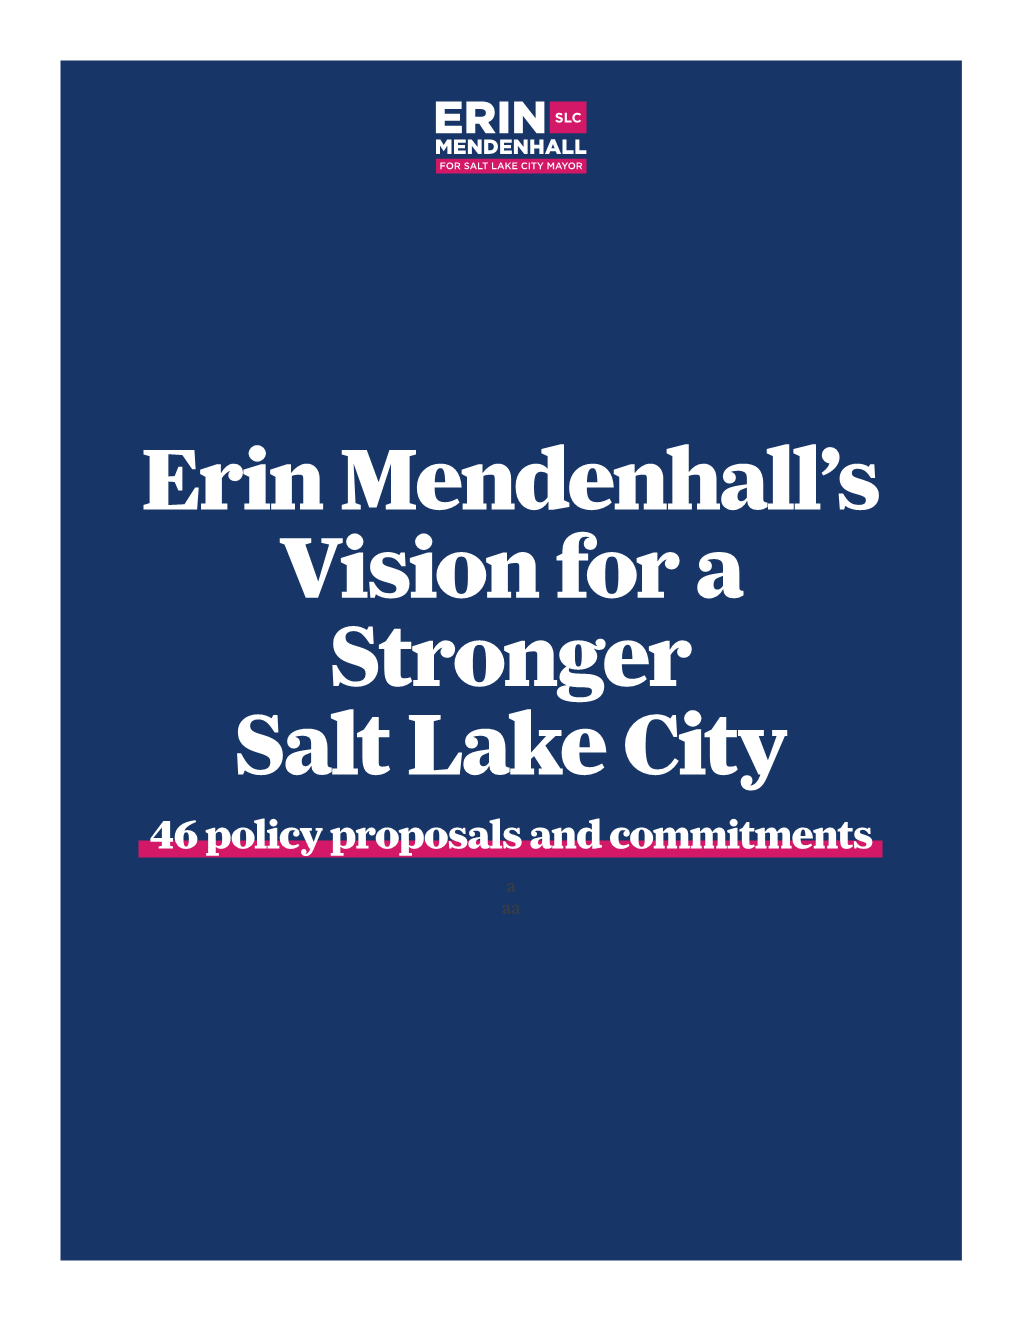 Erin Mendenhall's Vision for a Stronger Salt Lake City